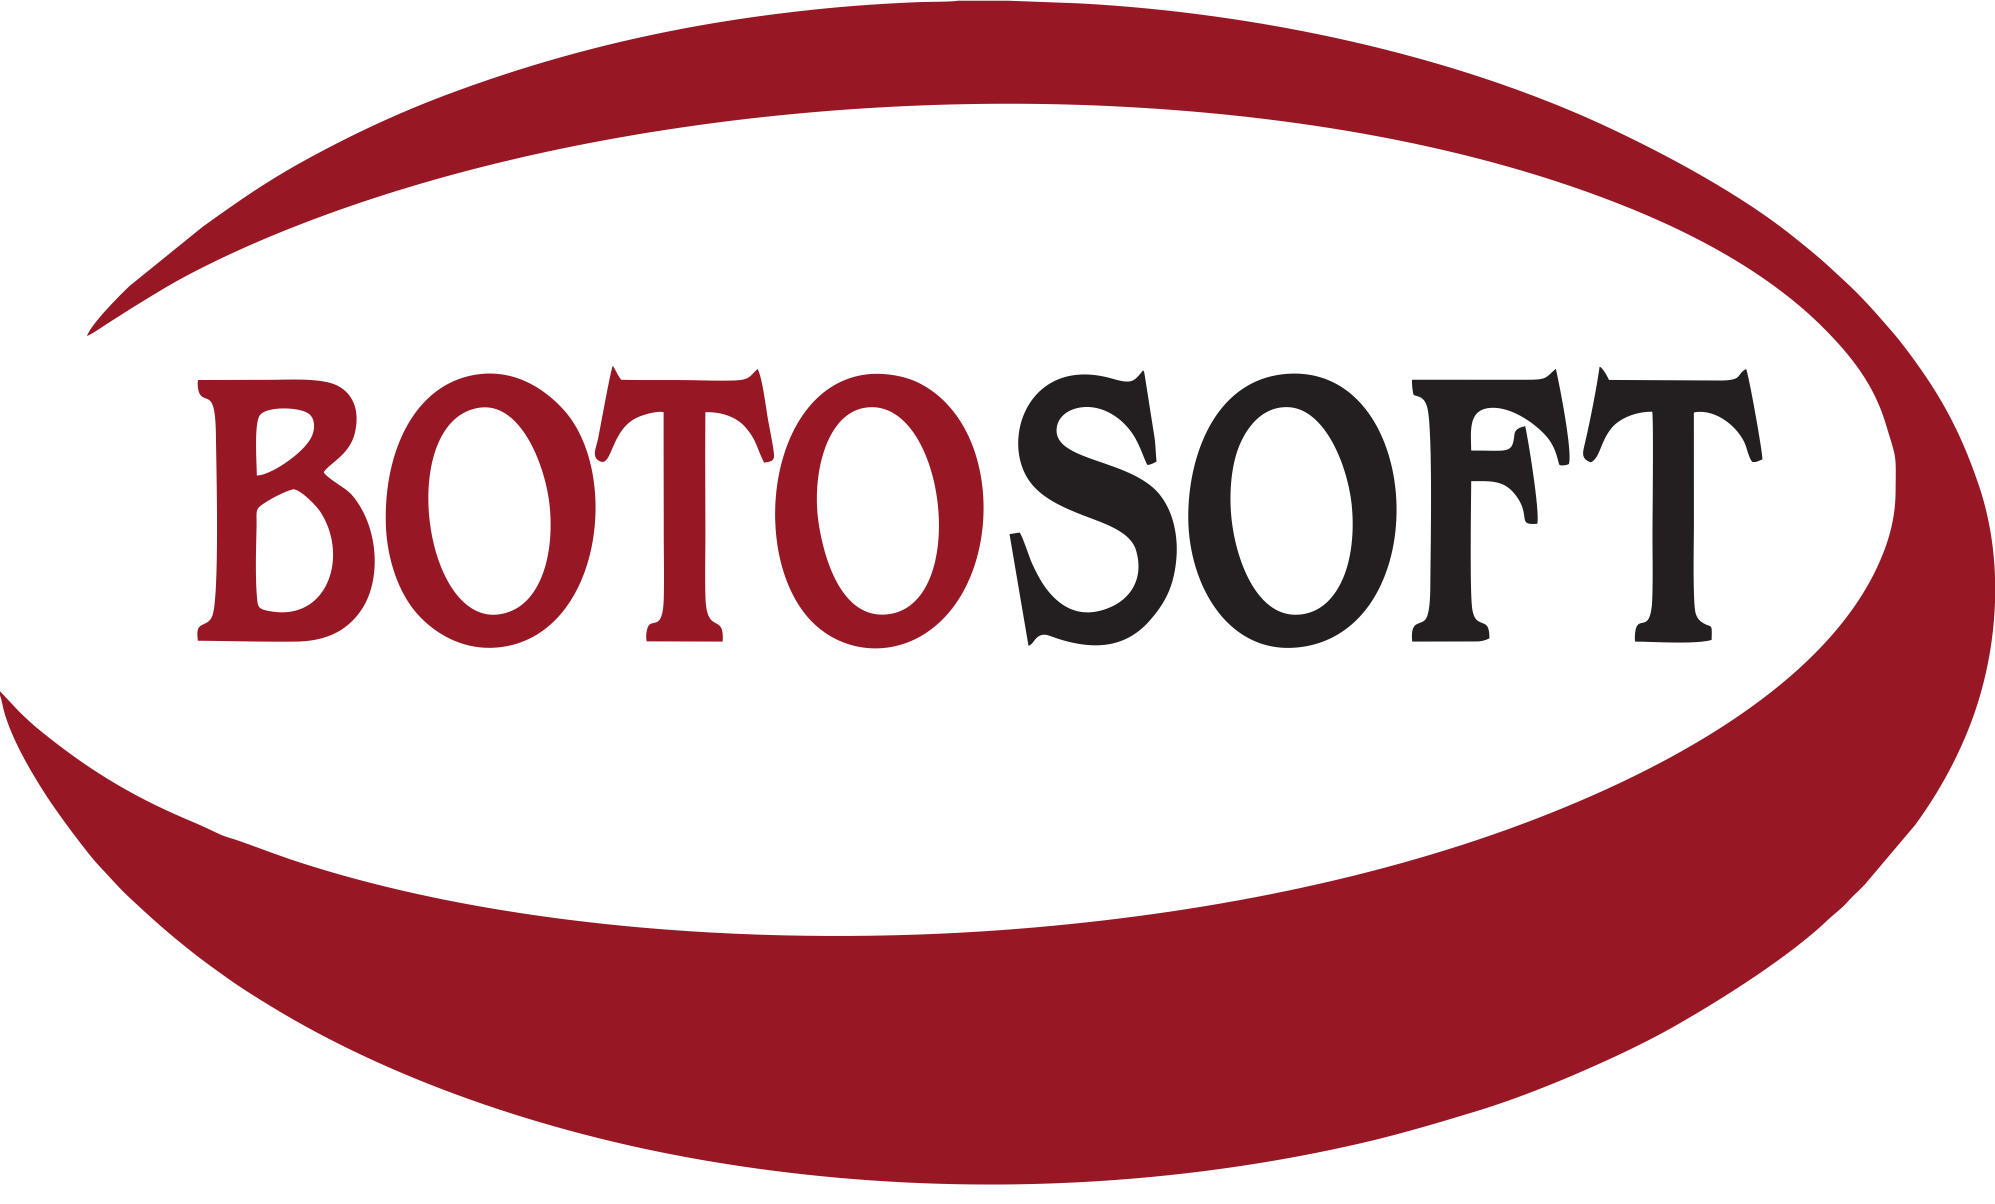 Botosoft Technologies